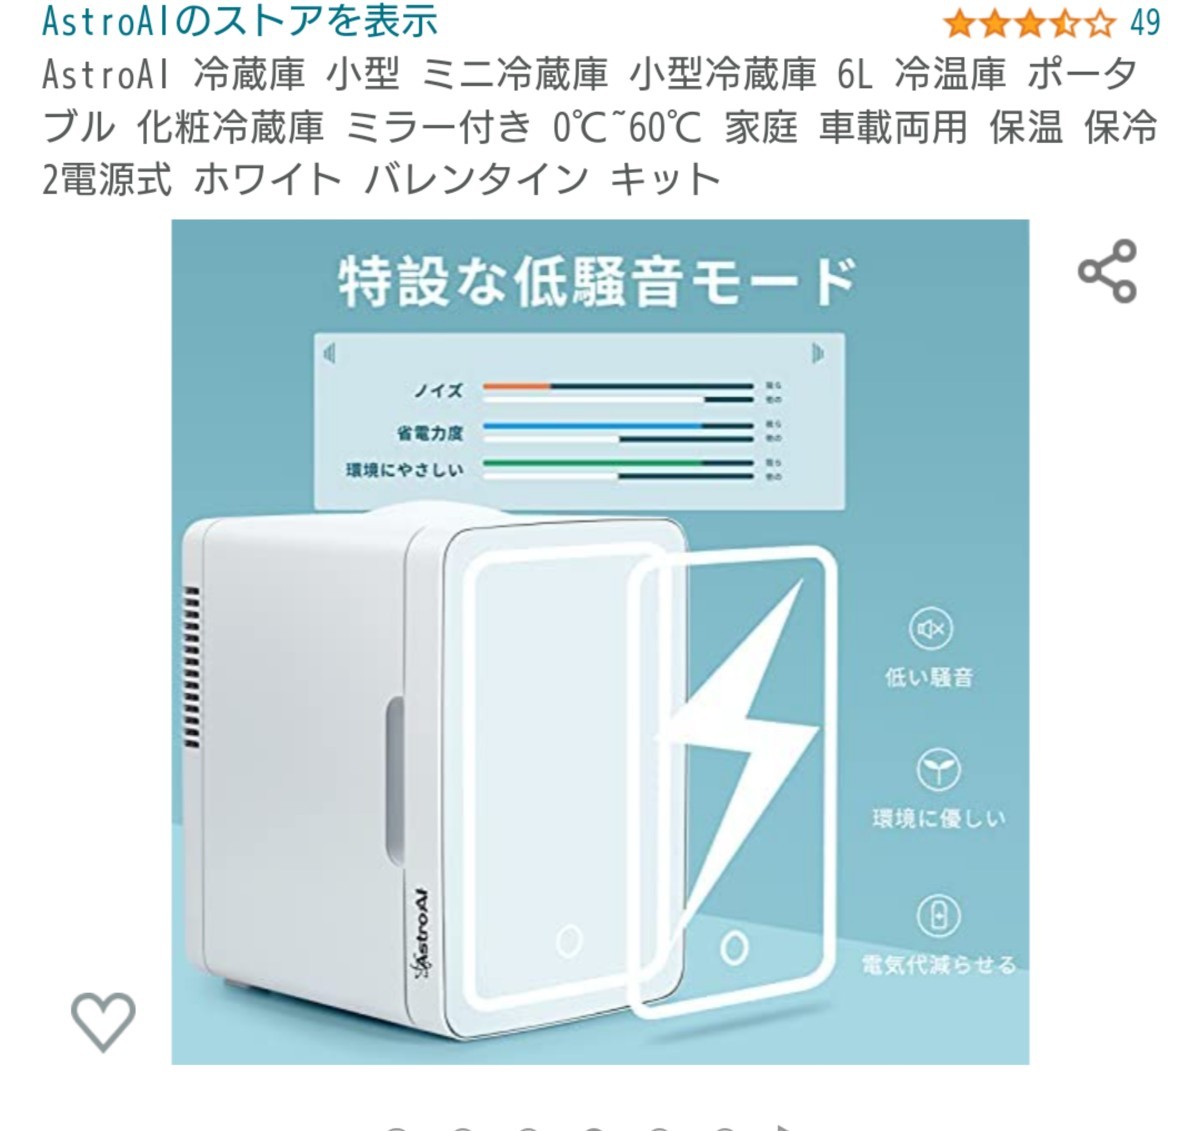 AstroAI 冷蔵庫 小型 6L ミラー付 家庭車載両用保温保冷 2電源式